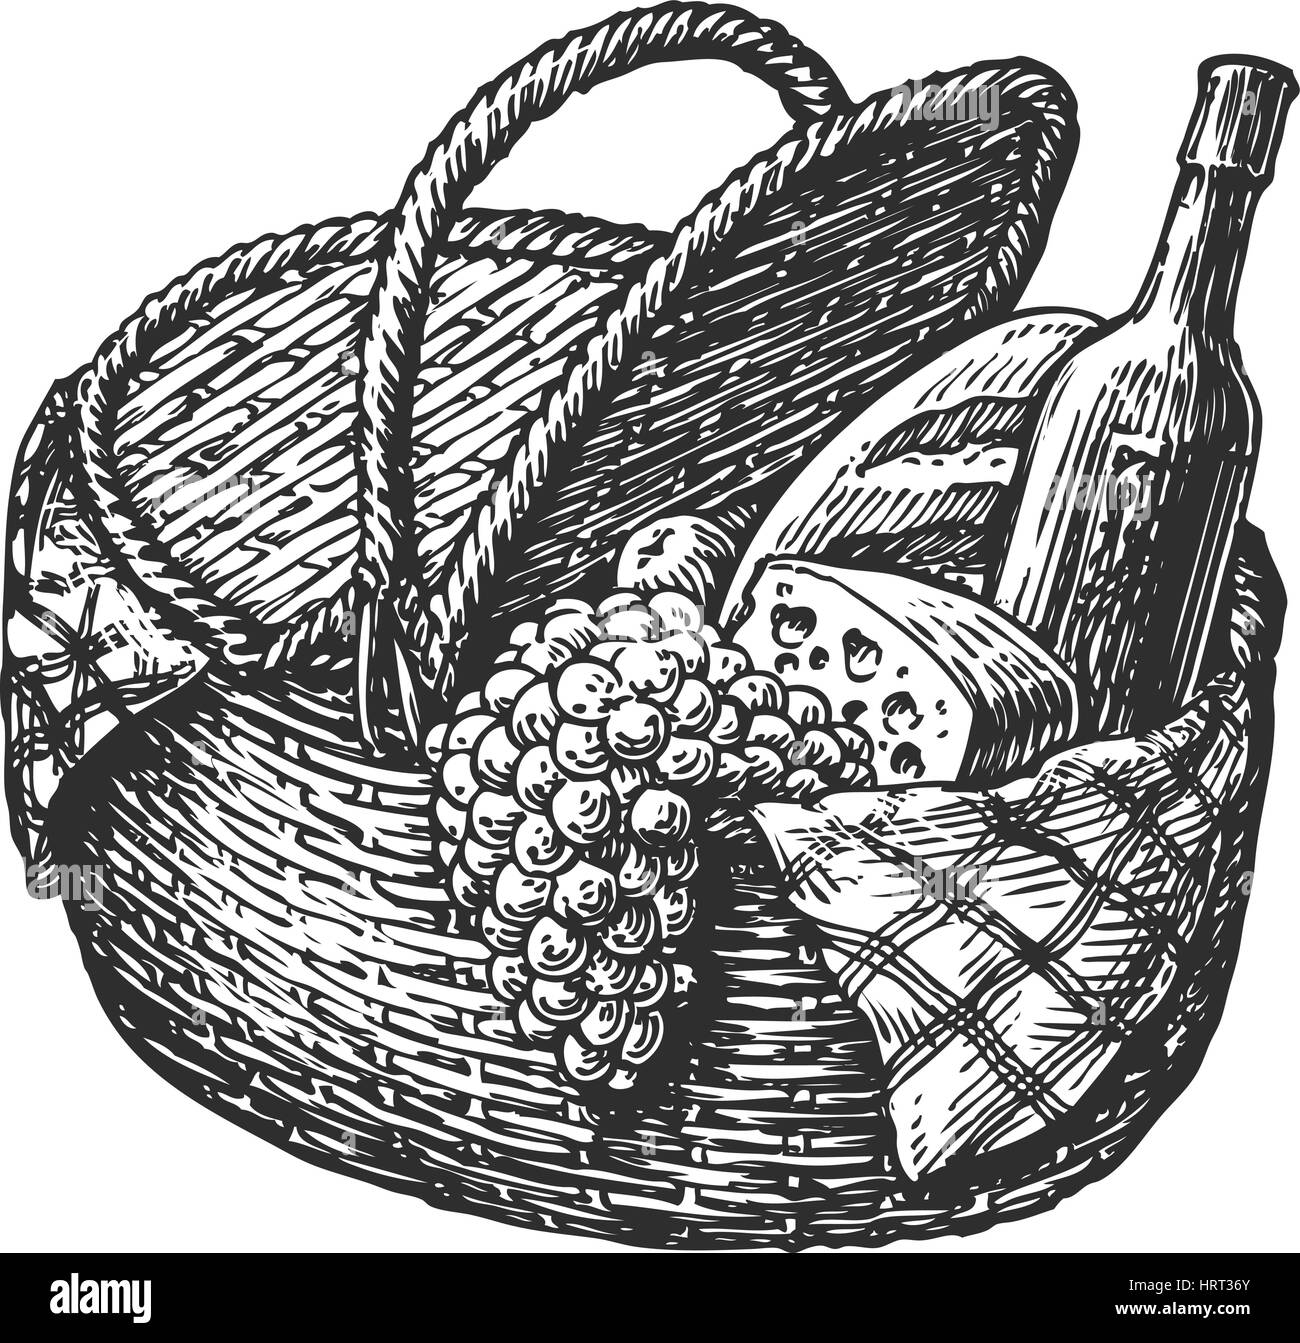 Panier de pique-nique en osier Vintage ou un panier avec de la nourriture comme une bouteille de vin, fromage, pain, les raisins. Vector illustration croquis Illustration de Vecteur